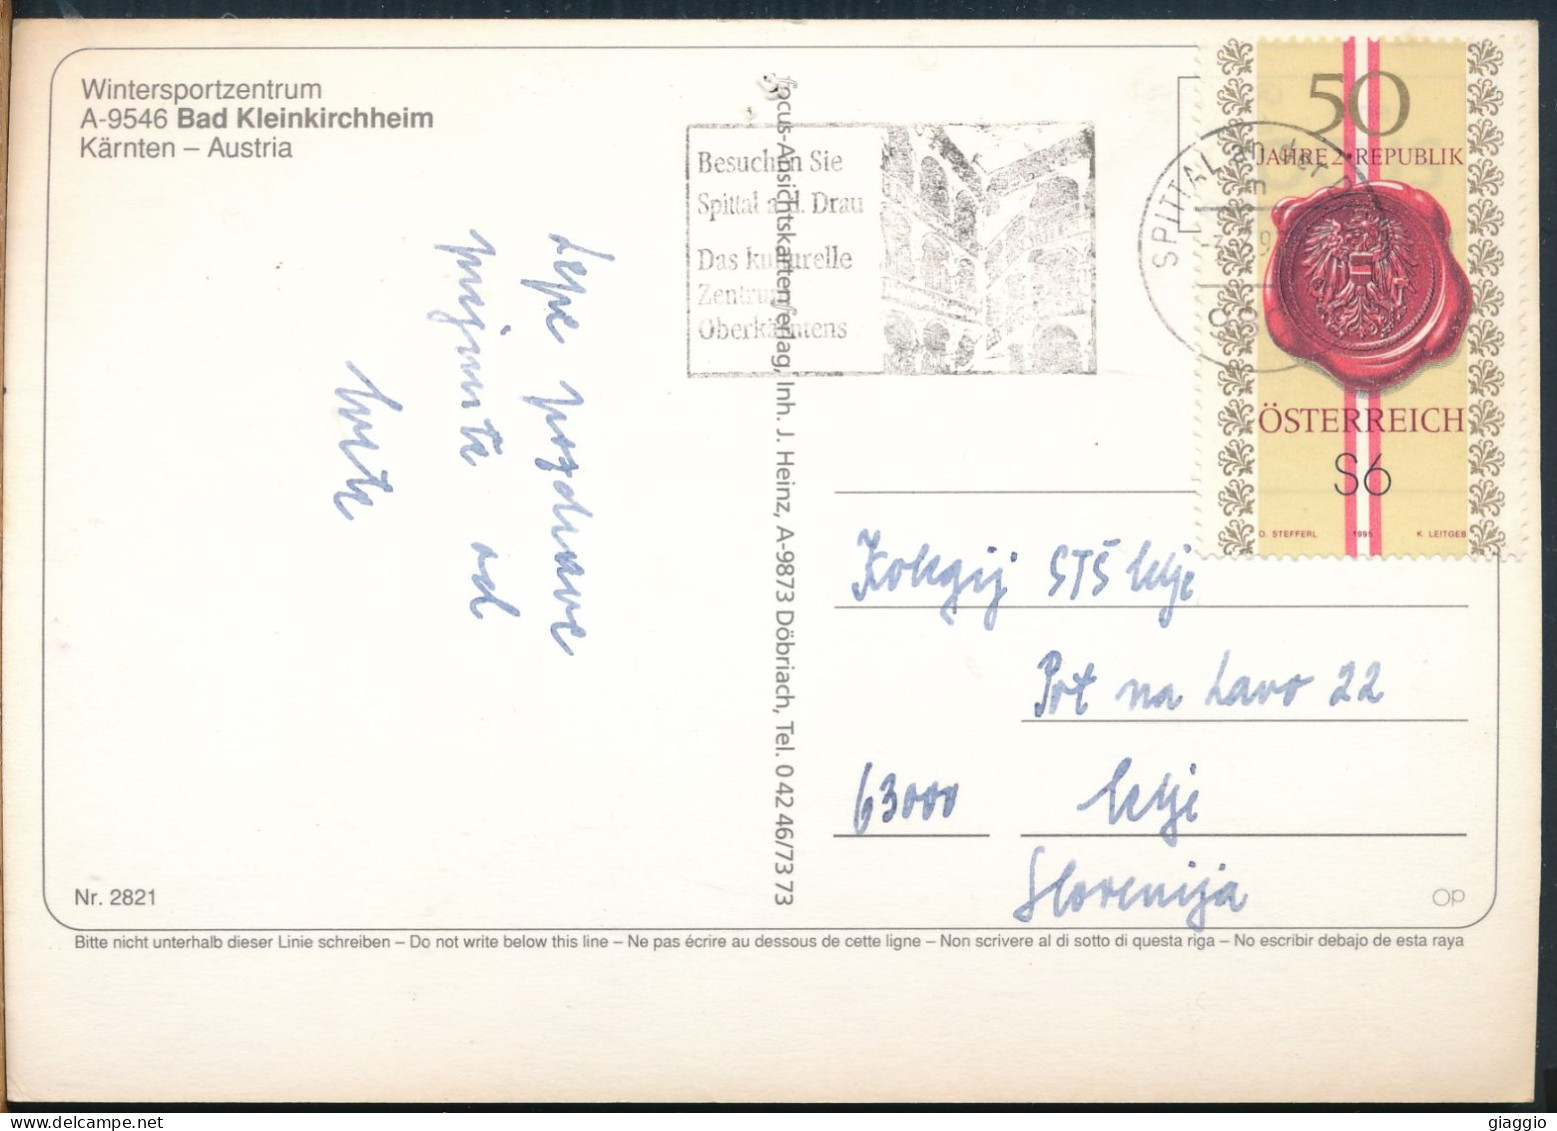 °°° 9928 - AUSTRIA - BAD KLEINKIRCHHEIM - 1997 With Stamps °°° - Spittal An Der Drau